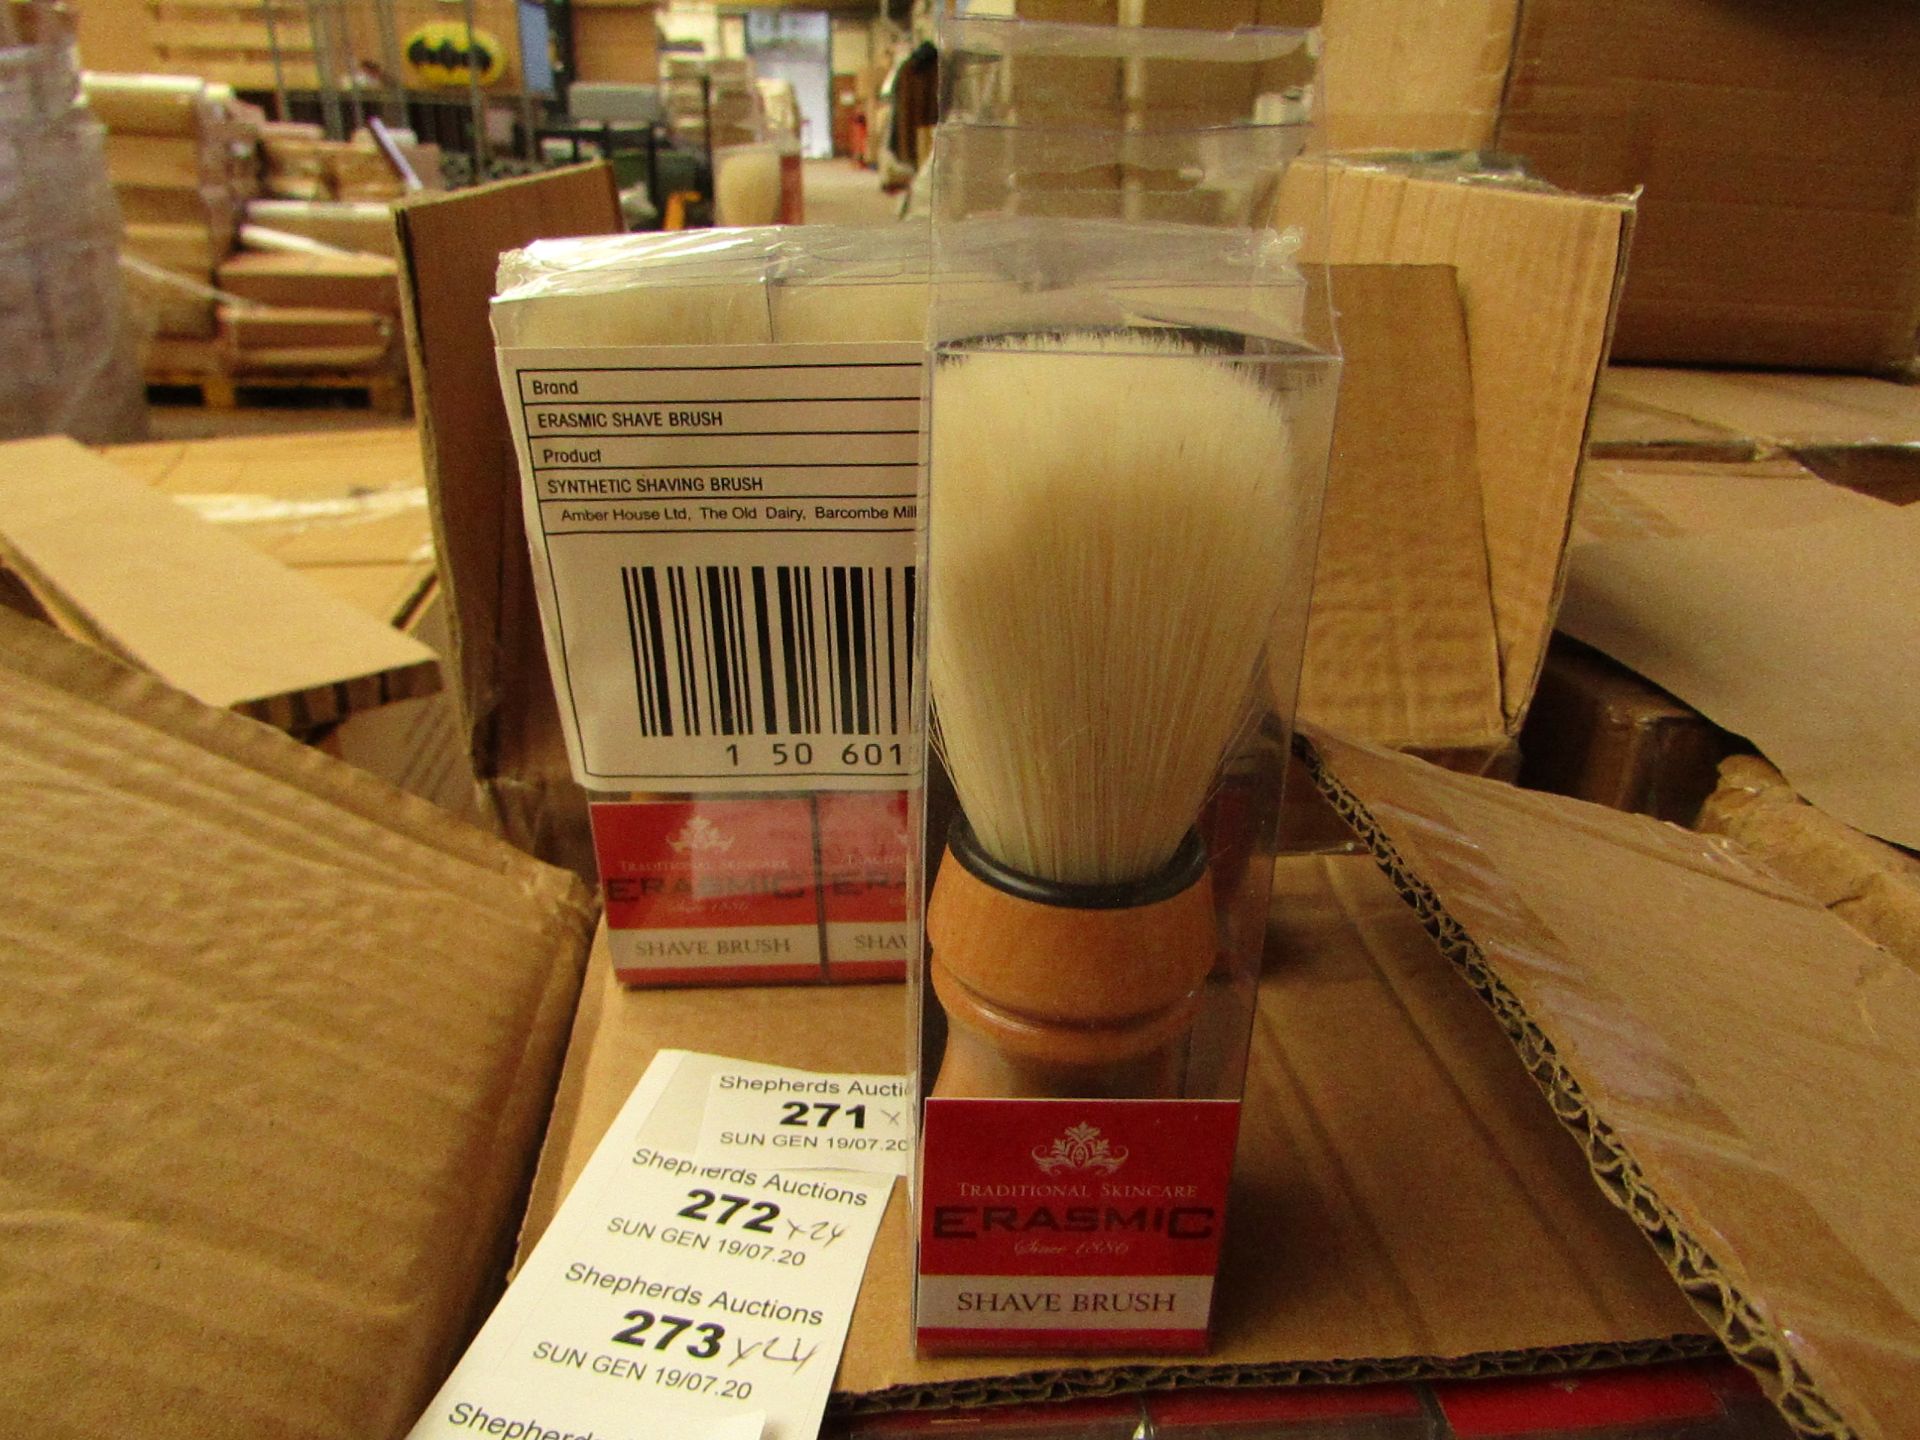 24 x Erasmic Shaving Brushes. New & Packaged